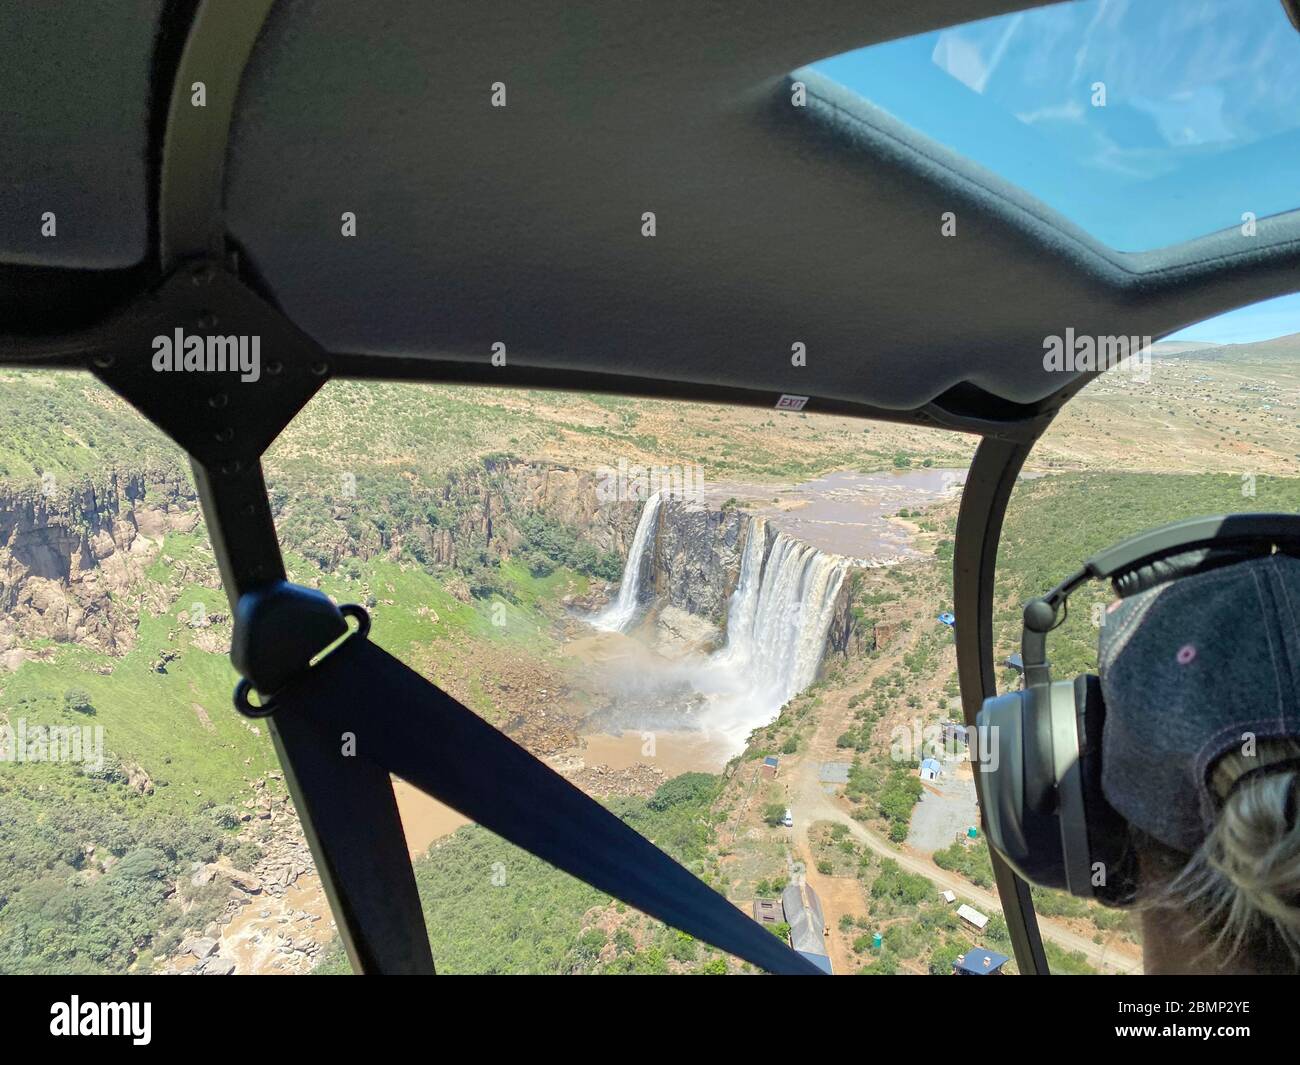 Lors d'un vol touristique, un passager d'un hélicoptère prend des photos de la grande cascade et des merveilles à la quantité d'eau qui descend. Banque D'Images